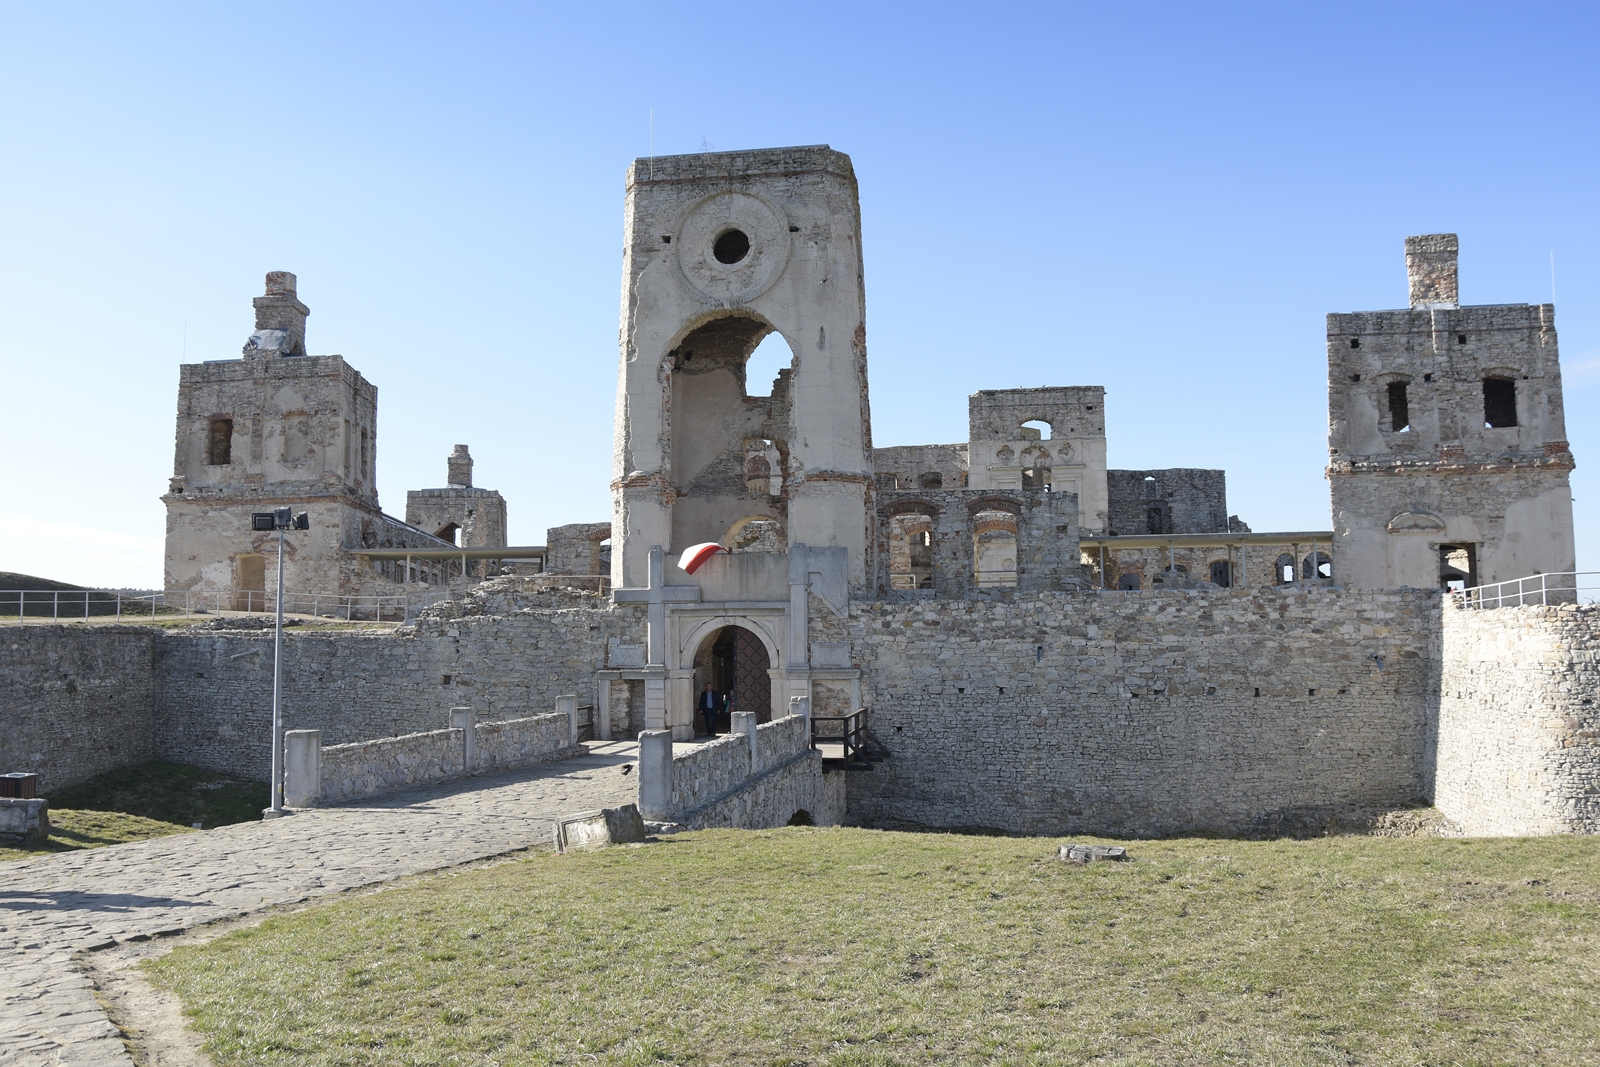 Ogromne ruiny zamku Krzyżtopór górują nad okolicą.